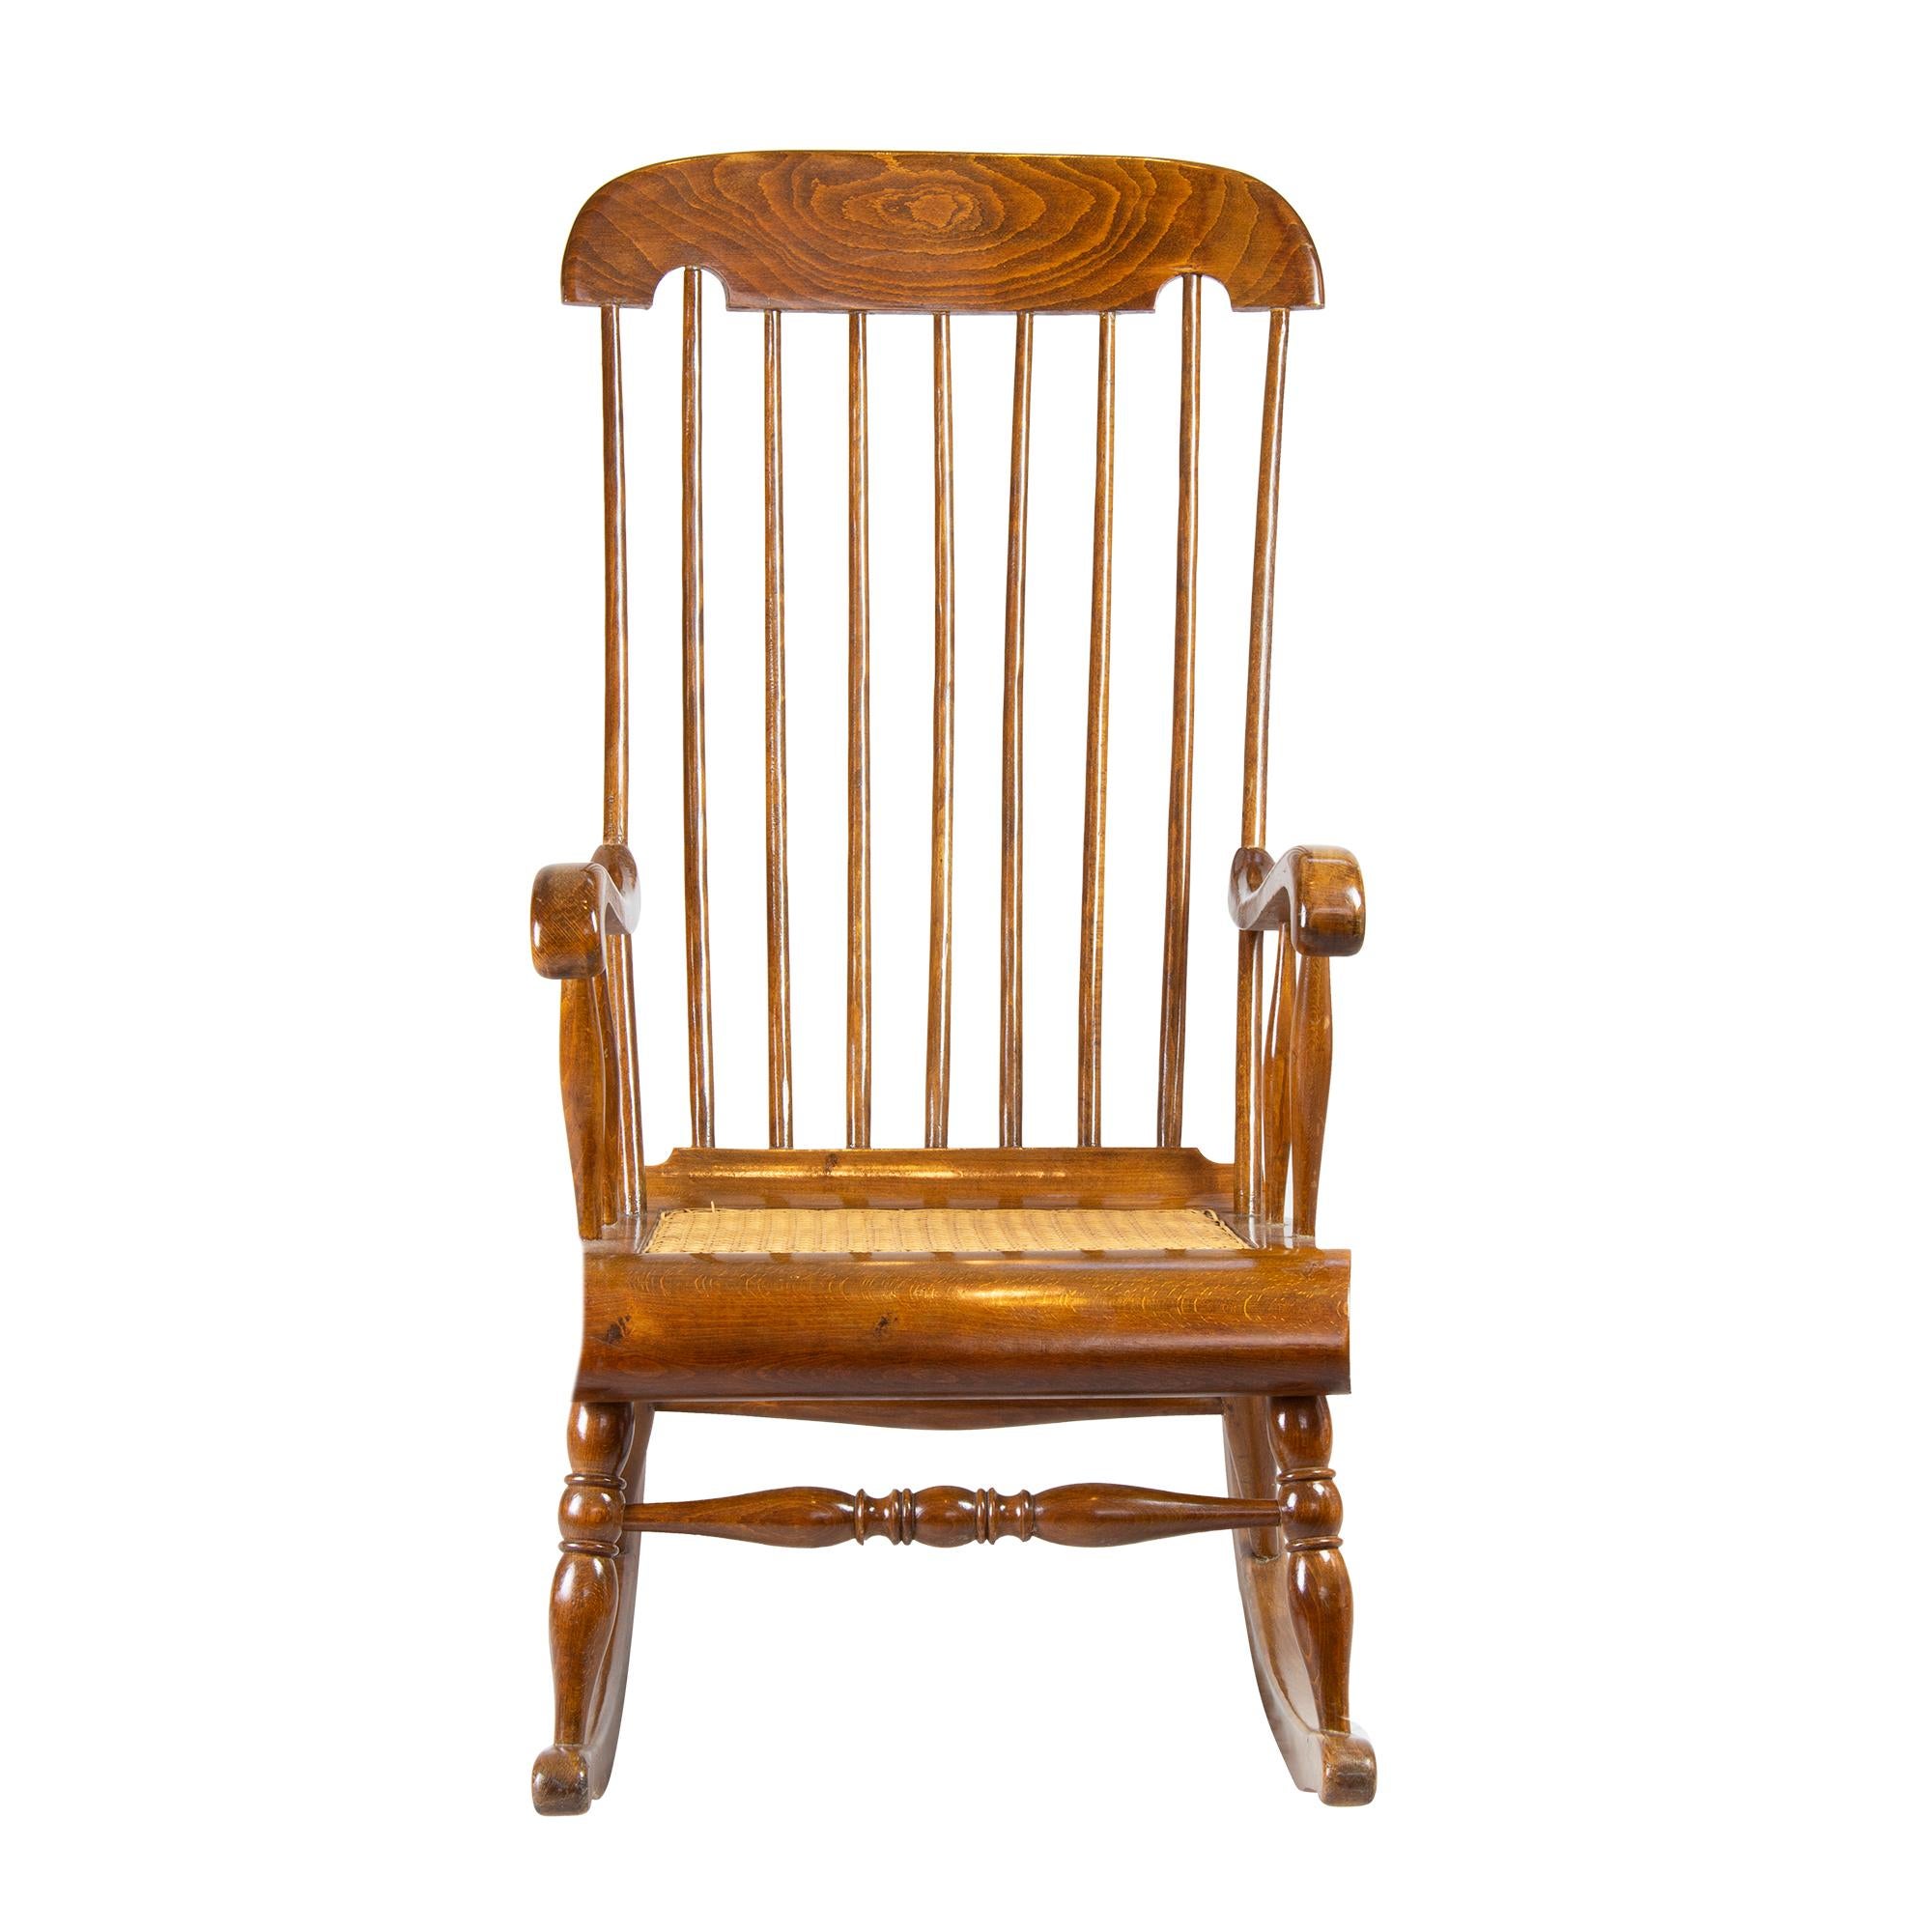 Le fauteuil à bascule à accoudoirs a été fabriqué en bois de hêtre massif. Le siège est tressé avec du cannage. Le dossier et l'appui-tête sont remontés très loin. La chaise date d'environ 1900.